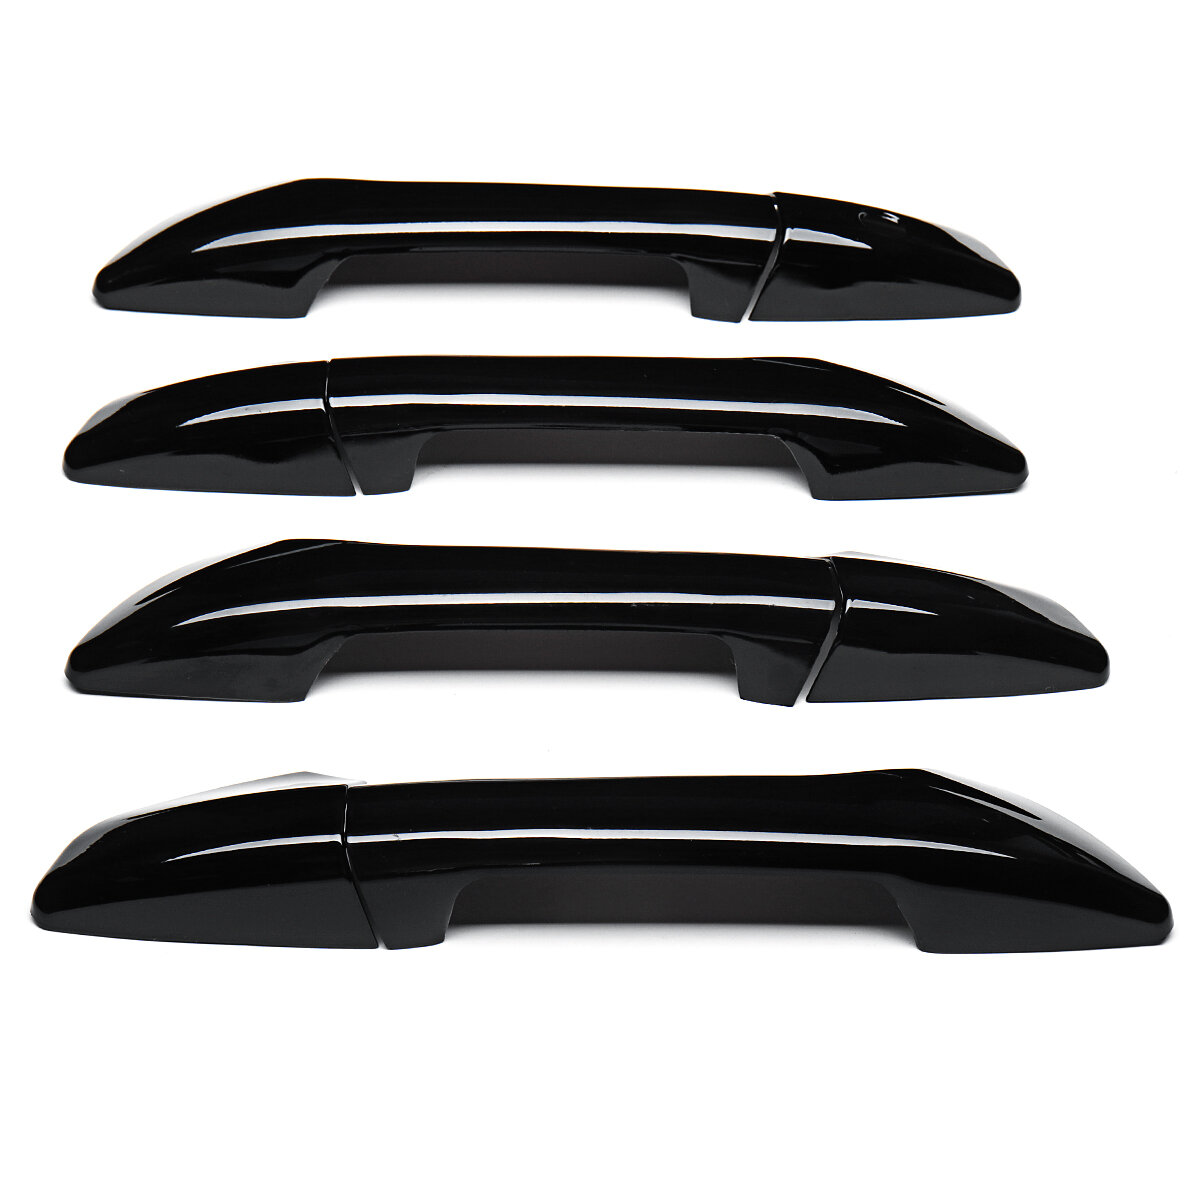 Cubiertas de manija de puerta negra brillante de 8 piezas para Honda Accord 2008 2009 2010 2011